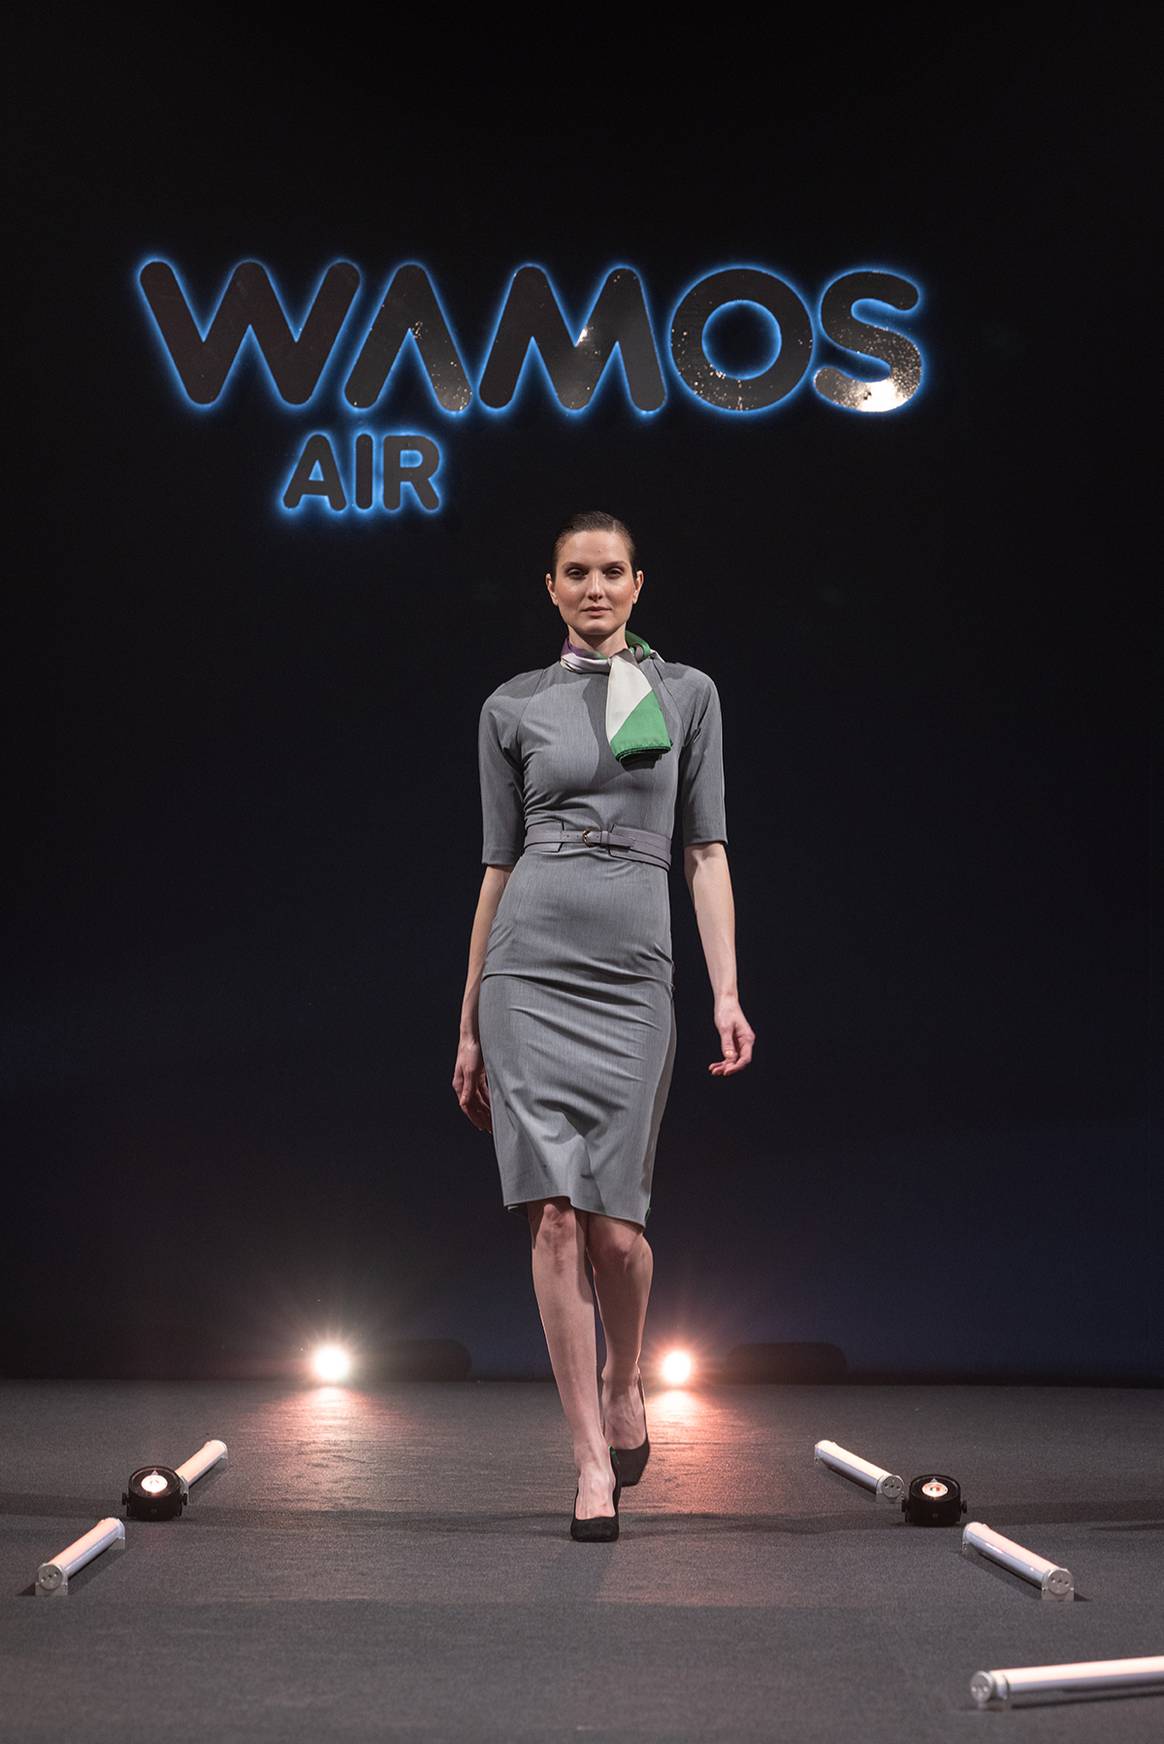 Photo Credits: Desfile de presentación en Madrid de los nuevos uniformes de Wamos Air, diseñados por Juanjo Oliva. Fotografía de cortesía, por Paula Valley.